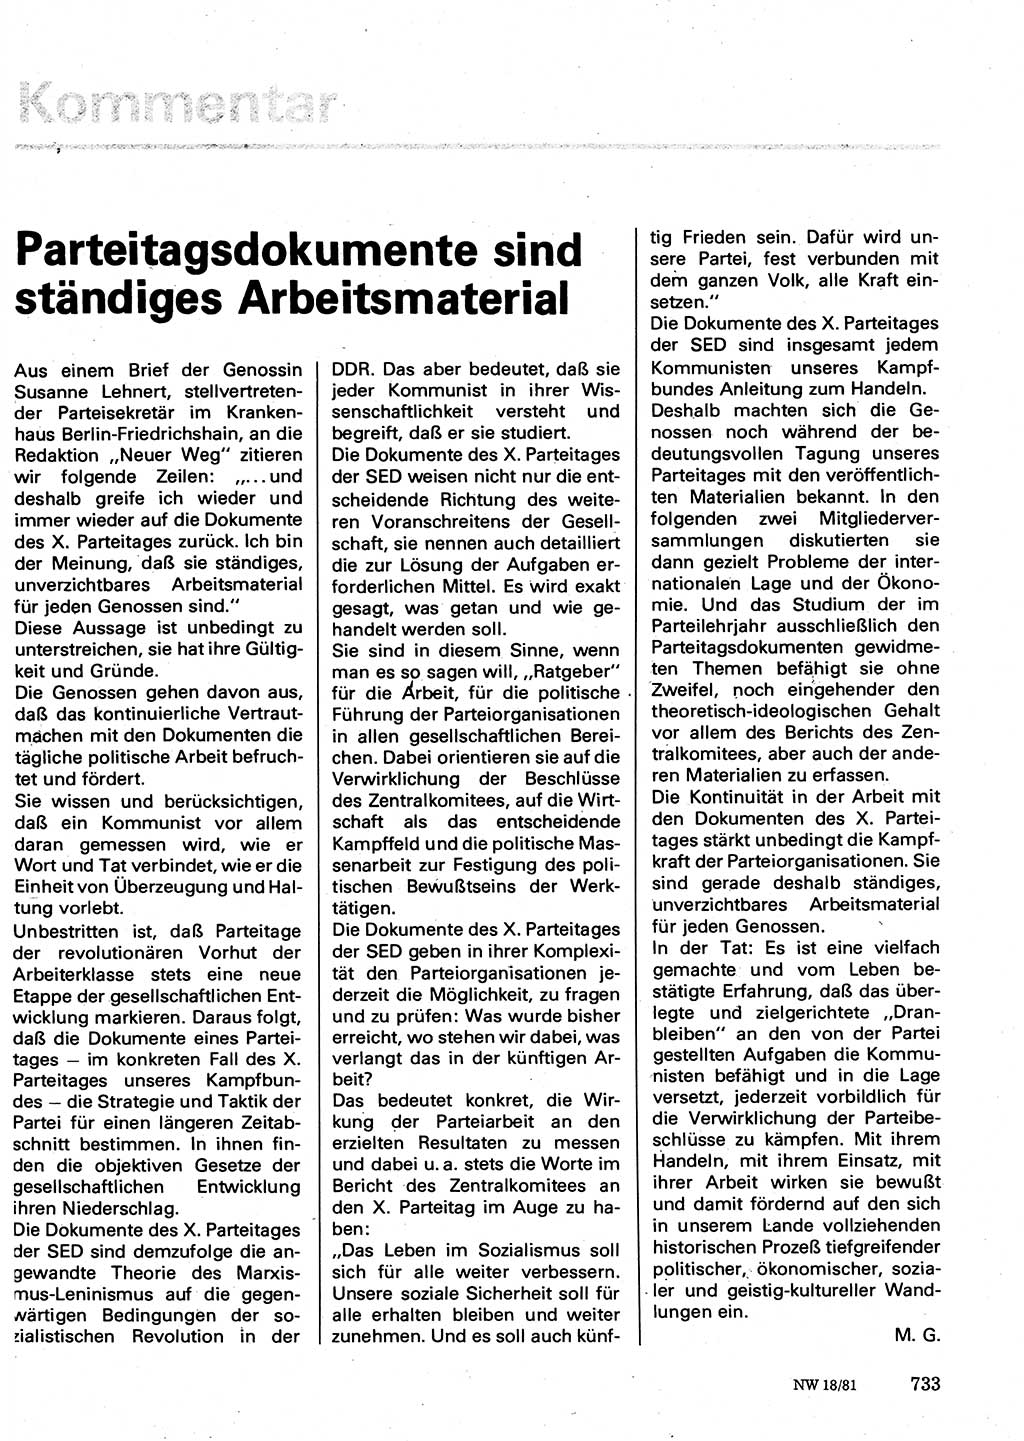 Neuer Weg (NW), Organ des Zentralkomitees (ZK) der SED (Sozialistische Einheitspartei Deutschlands) für Fragen des Parteilebens, 36. Jahrgang [Deutsche Demokratische Republik (DDR)] 1981, Seite 733 (NW ZK SED DDR 1981, S. 733)